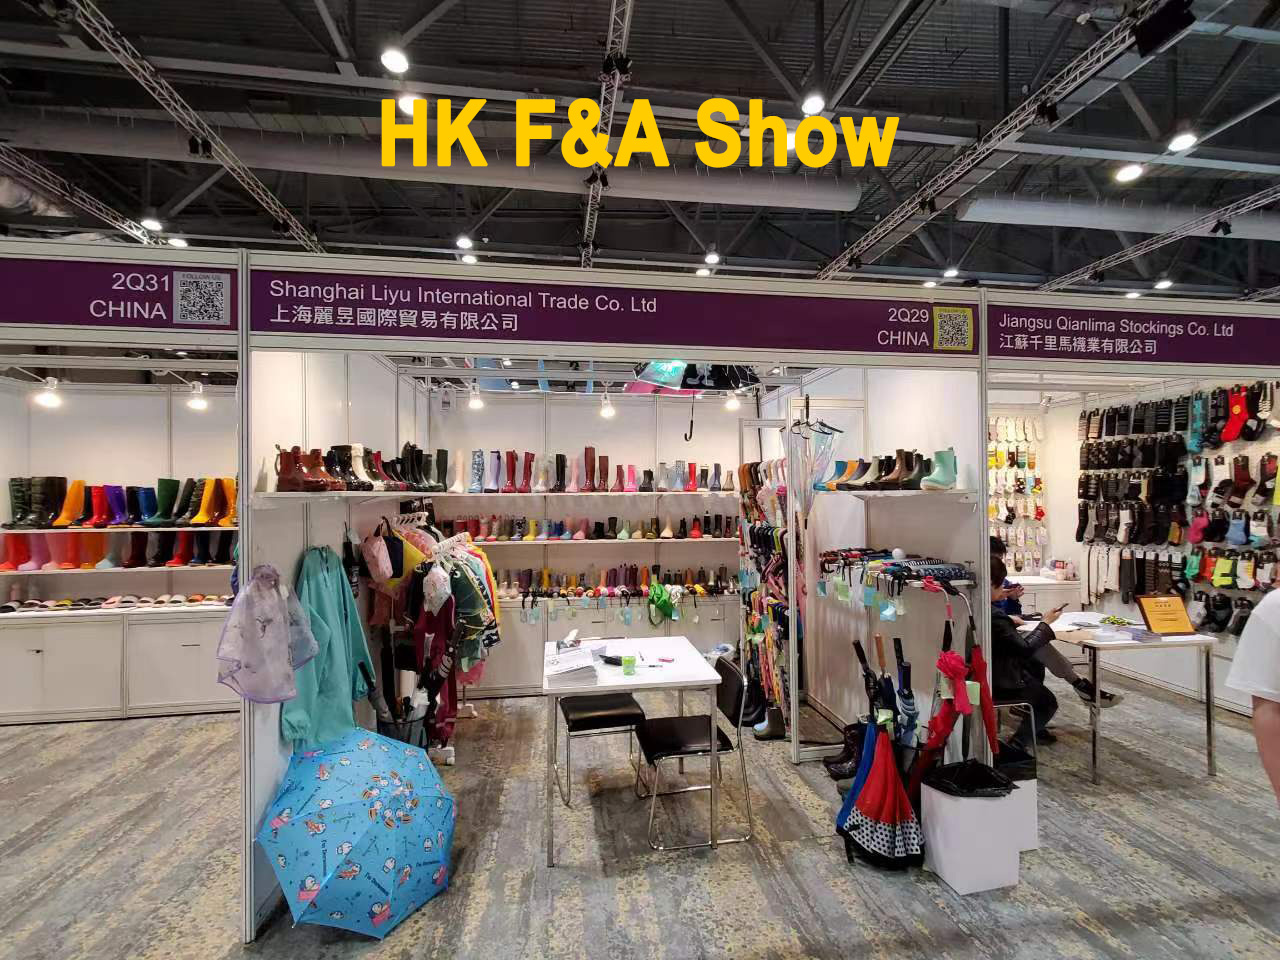 HK F&A show